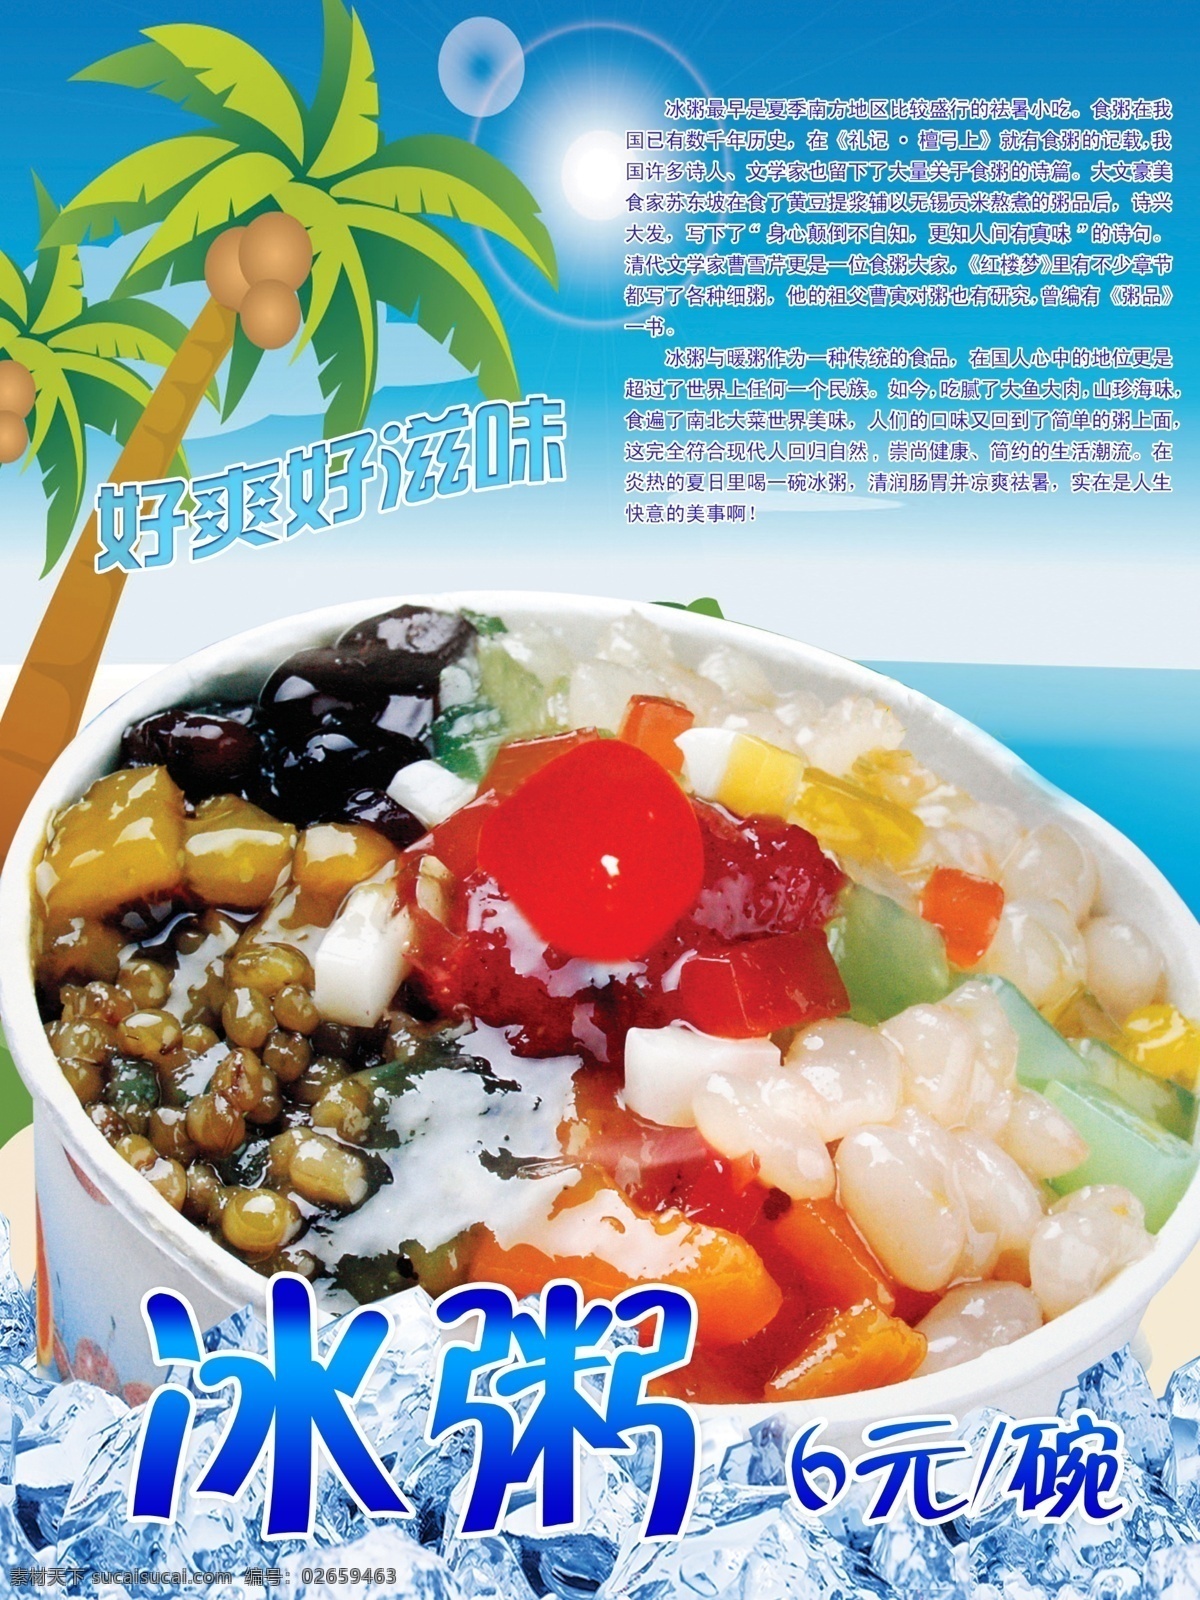 冰粥图片 冰粥海报 冰粥宣传 夏威夷背景 椰子树 海滩背景 清新图片